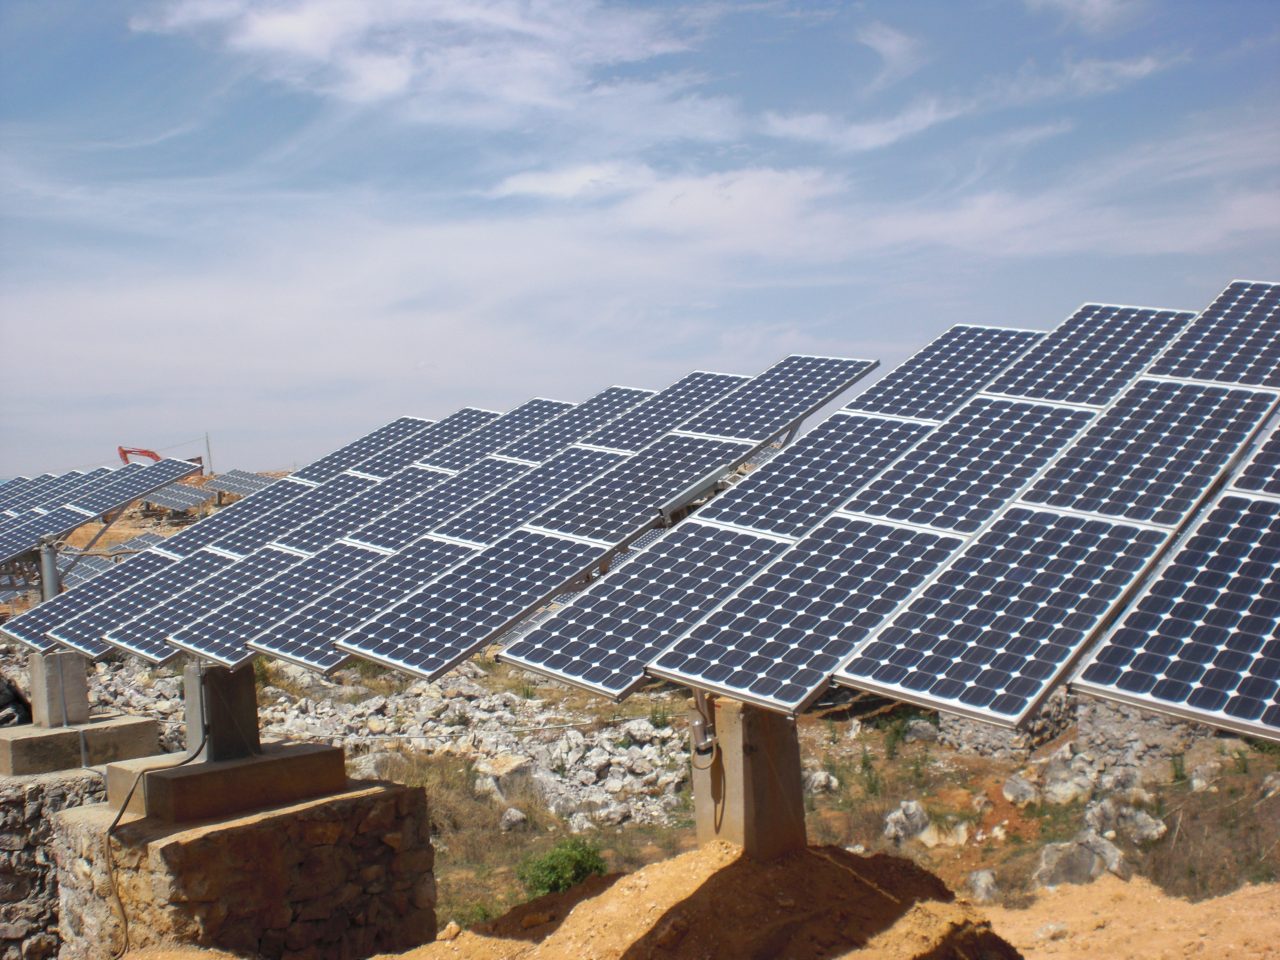 Կքննարկվի Գրին Էներջի արևային կայանի էլէներգիայի սակագինը 51.287 դրամ սահմանելու հարցը